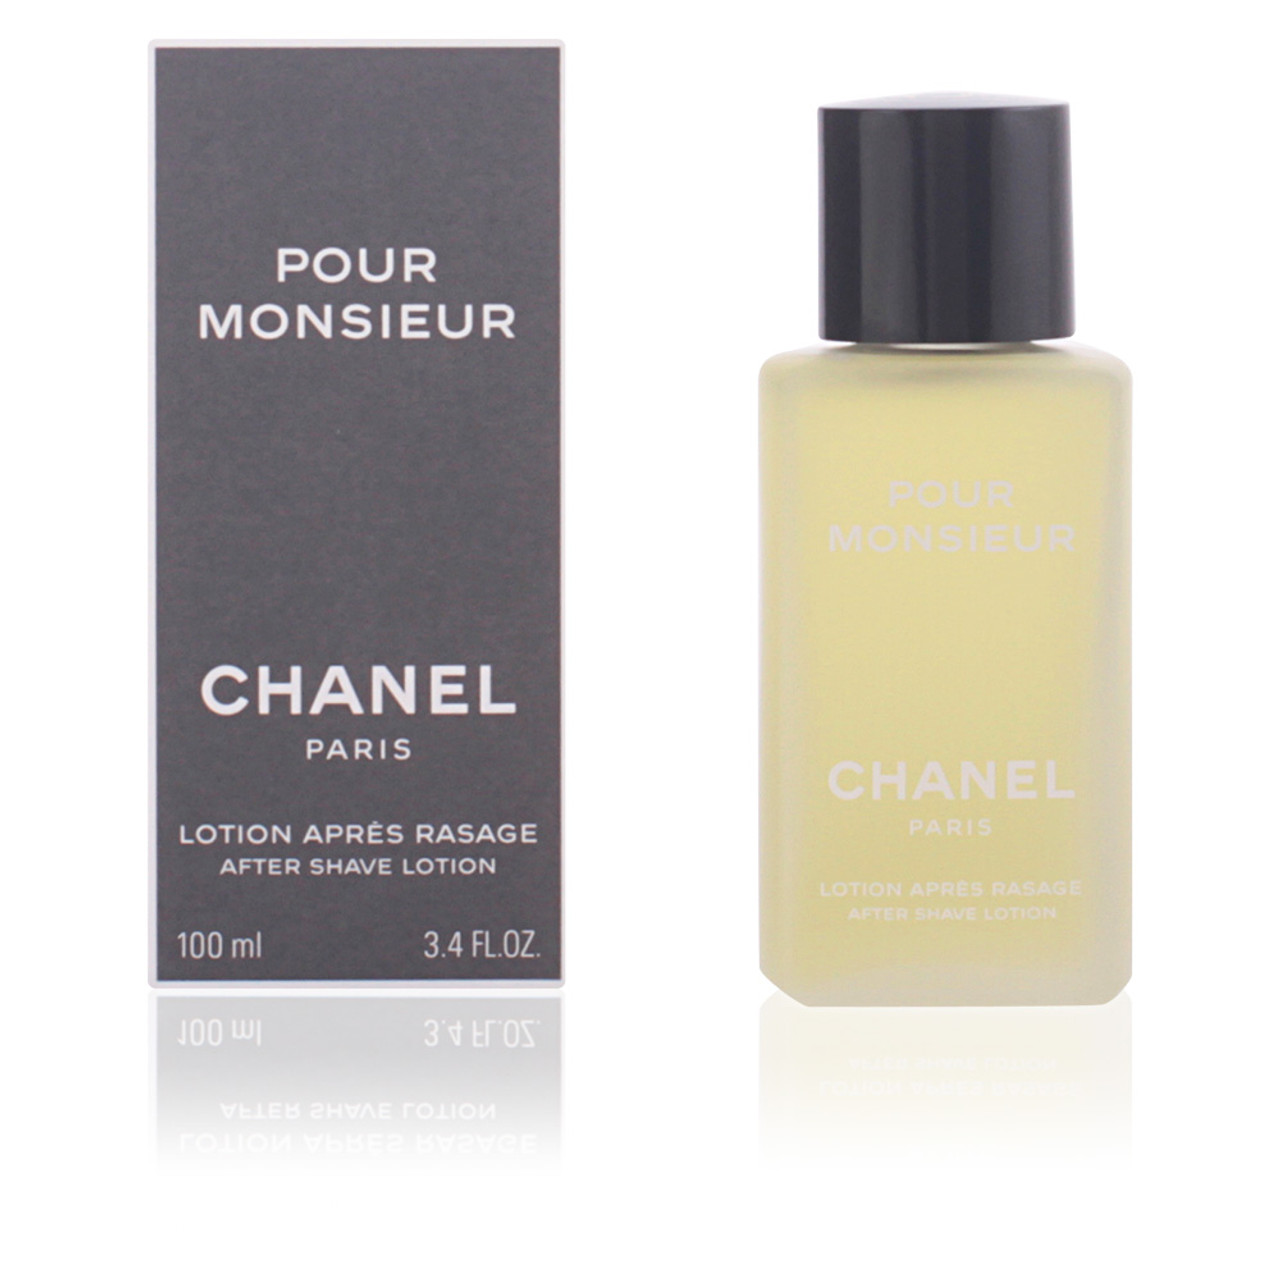 POUR MONSIEUR Eau de Parfum Spray (EDP) - 2.5 FL. OZ. - Chanel